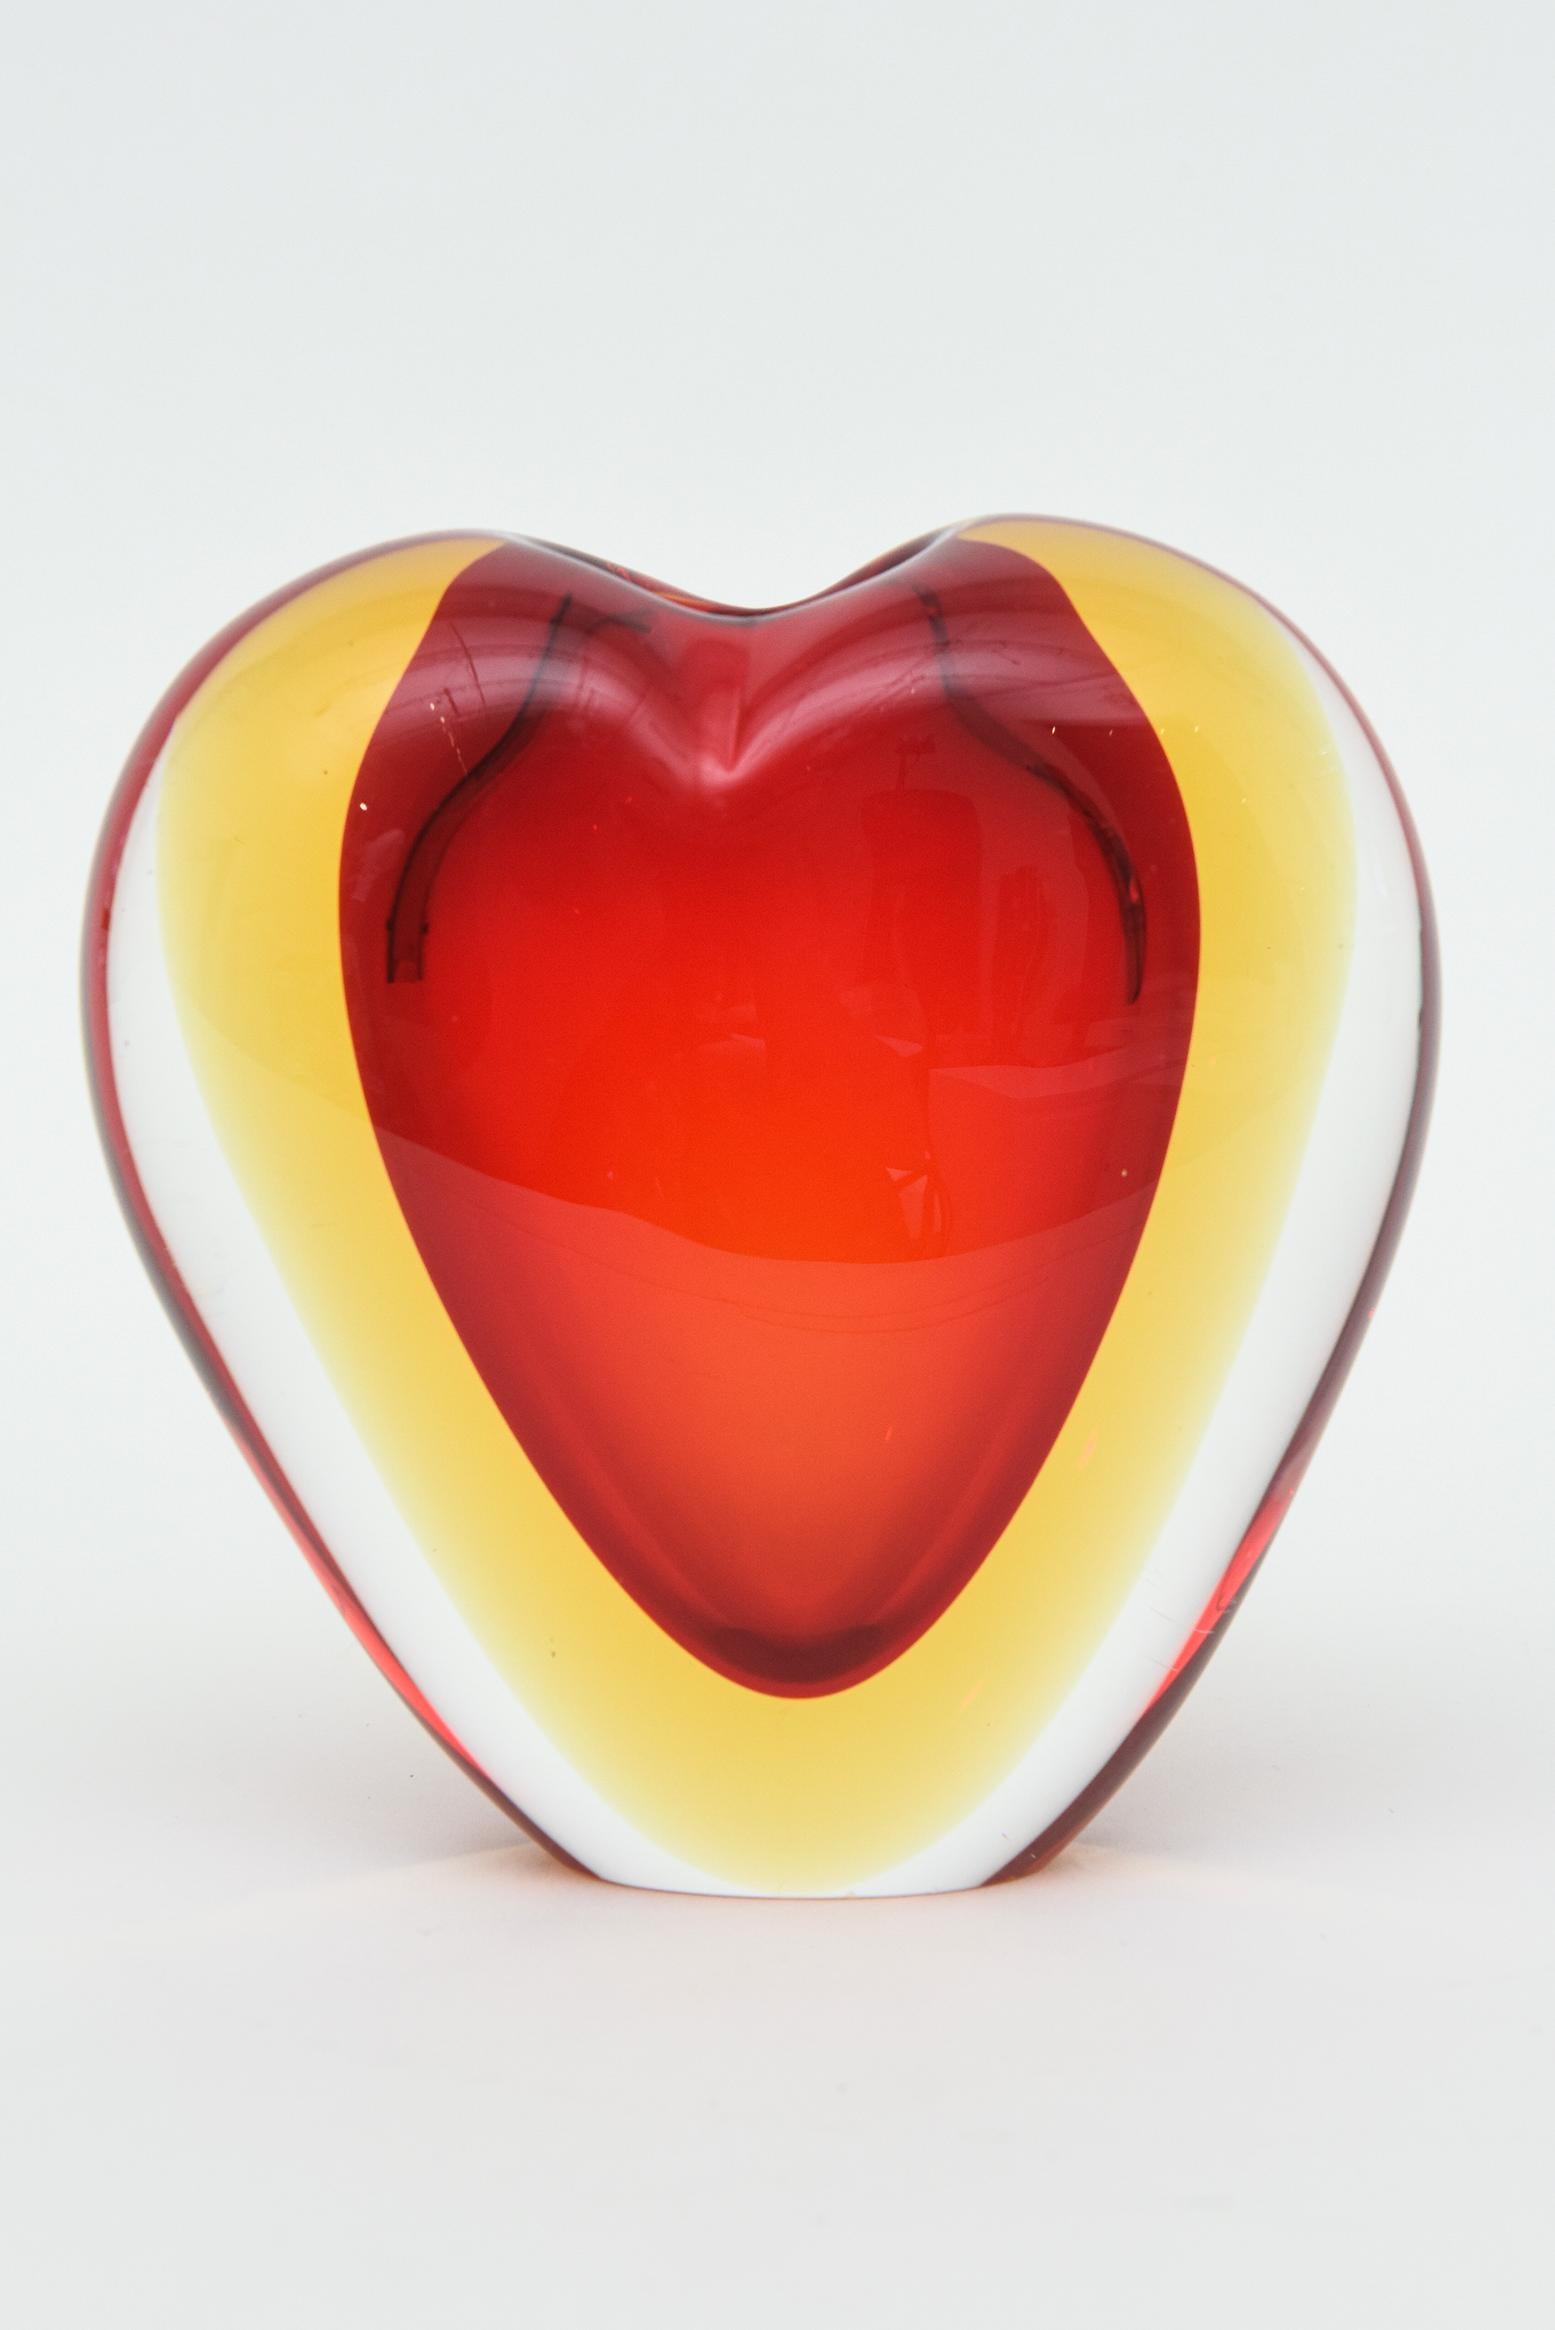 Dieses schöne italienische Murano Glas Herz Vase oder Objekt Skulptur ist von Antonio da Ros für Cenedese und aus den 70er Jahren. Es ist geschichtet sommerso Glas in rot, gelb dann zu klar. Die Form ist ein Herz und es passen nur ein paar kleine